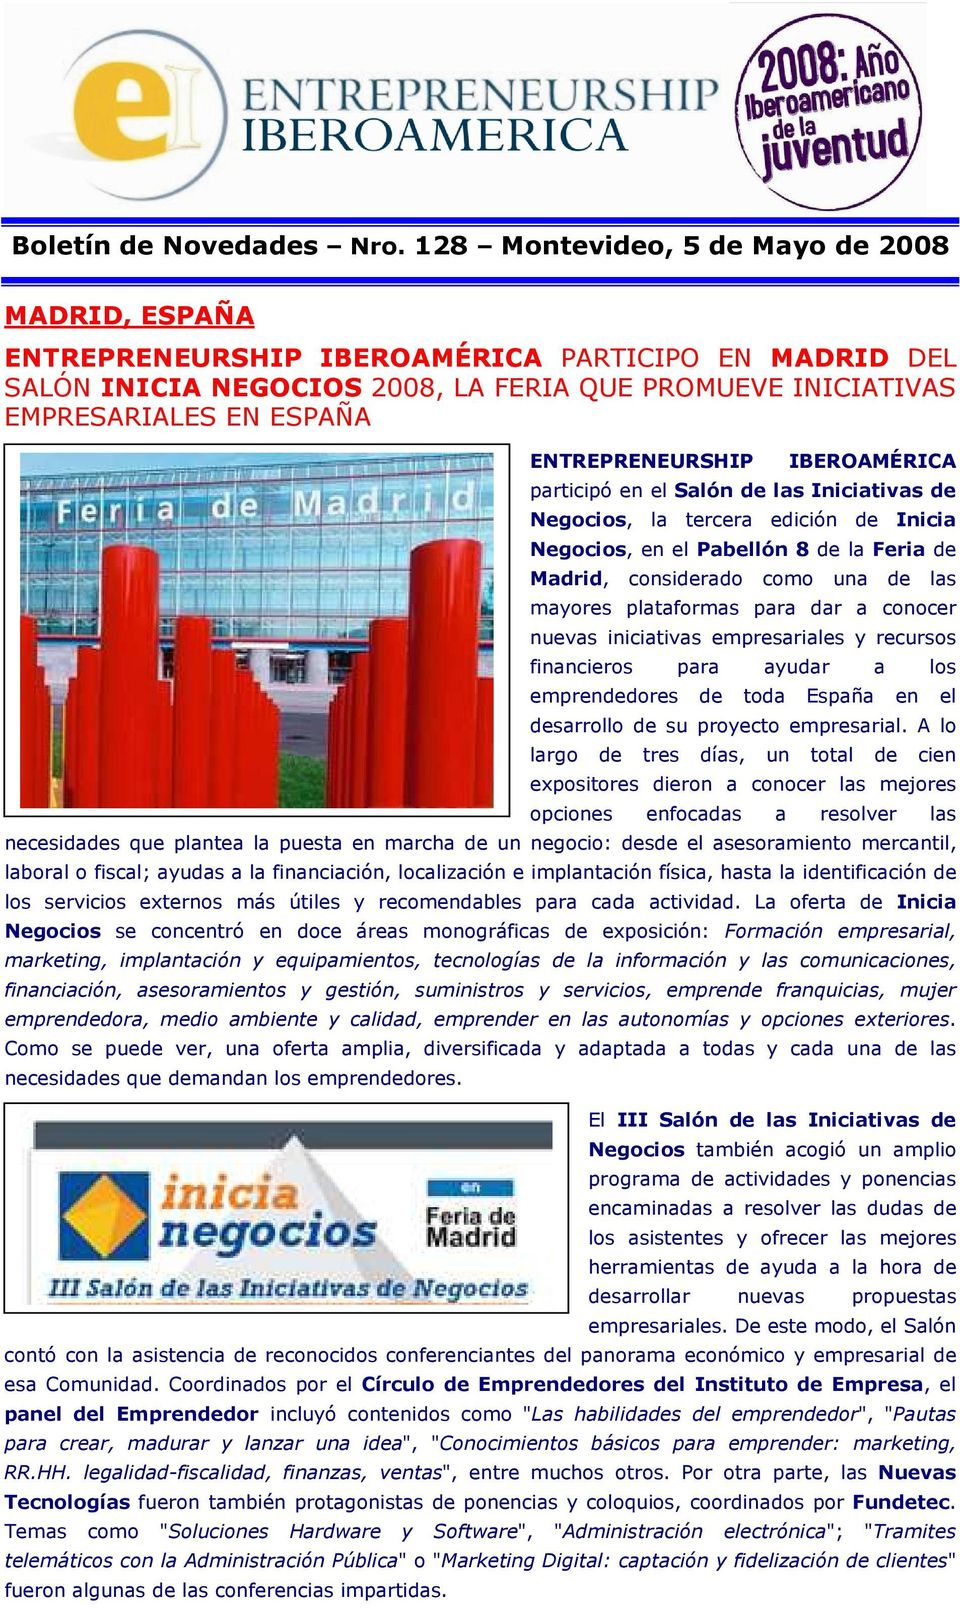 ENTREPRENEURSHIP IBEROAMÉRICA participó en el Salón de las Iniciativas de Negocios, la tercera edición de Inicia Negocios, en el Pabellón 8 de la Feria de Madrid, considerado como una de las mayores